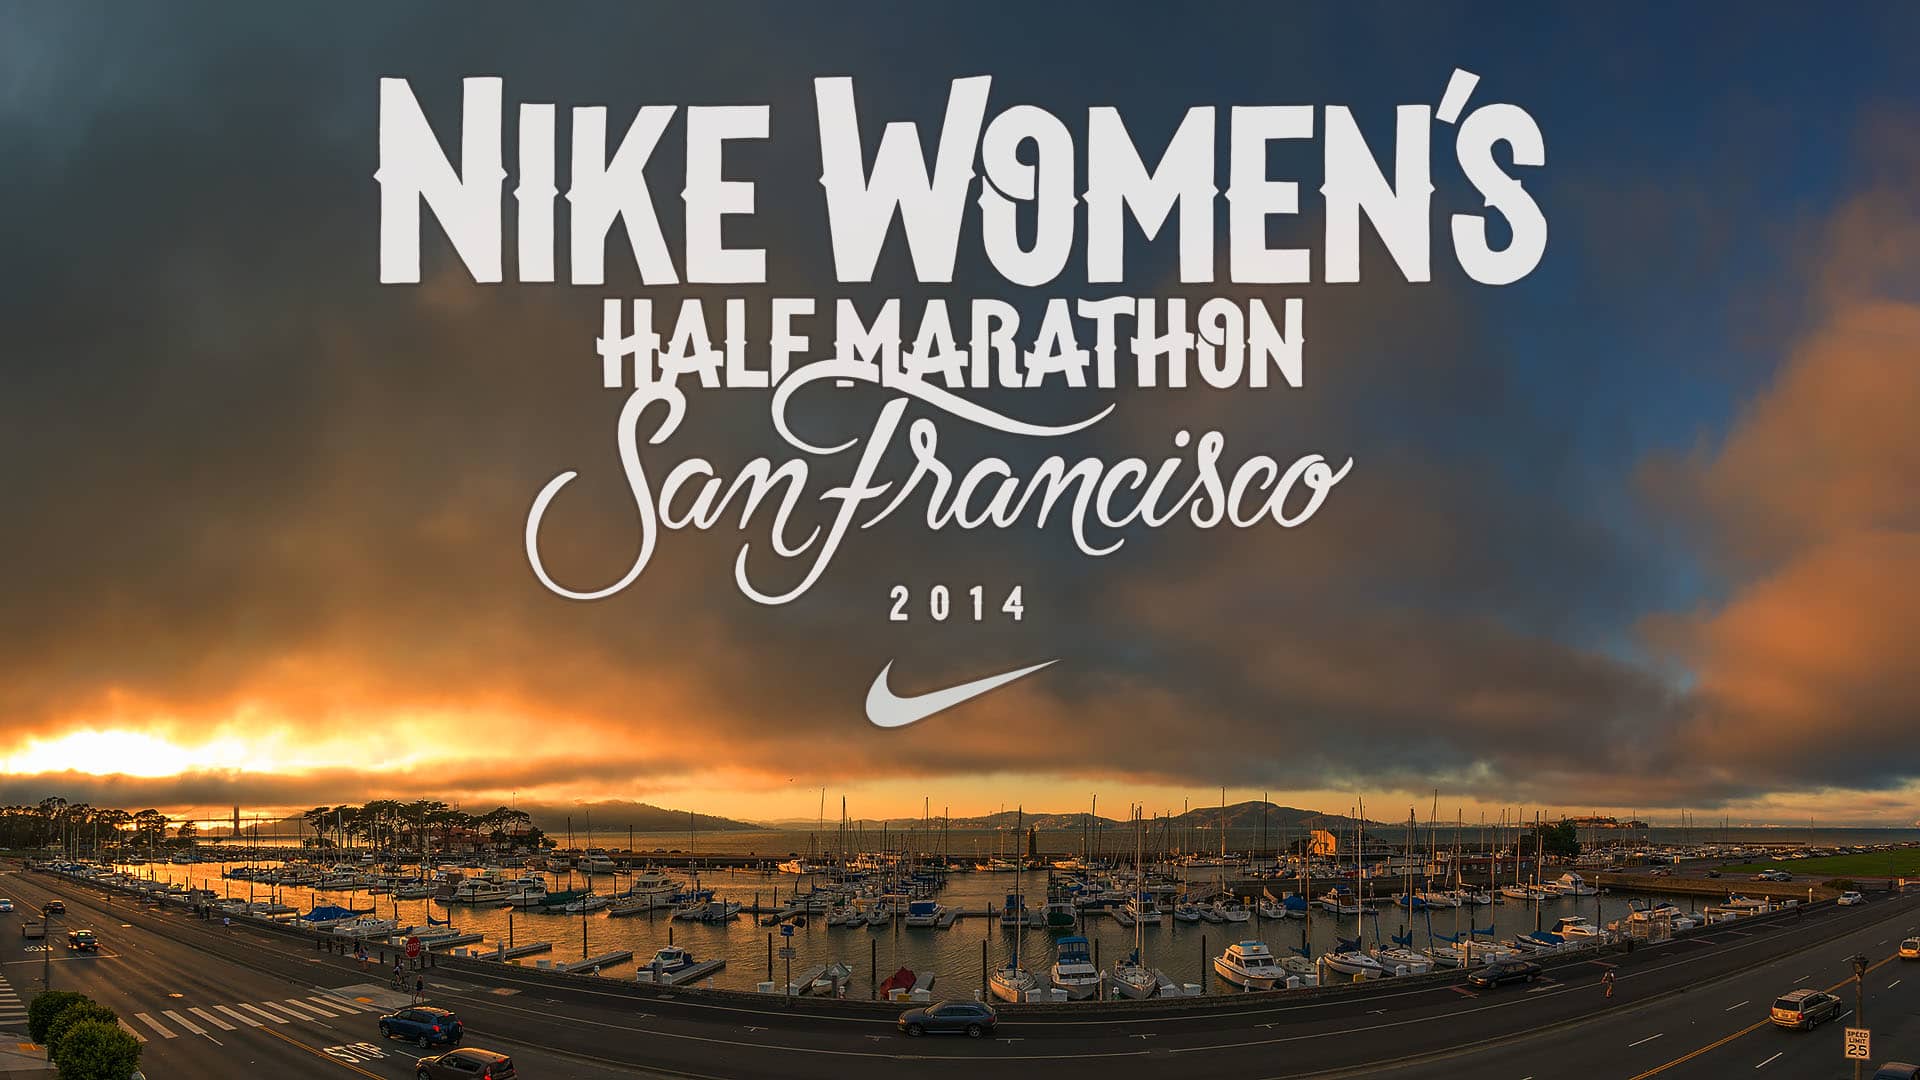 Nike Women's Half Marathon San Francisco Course Preview on Vimeo